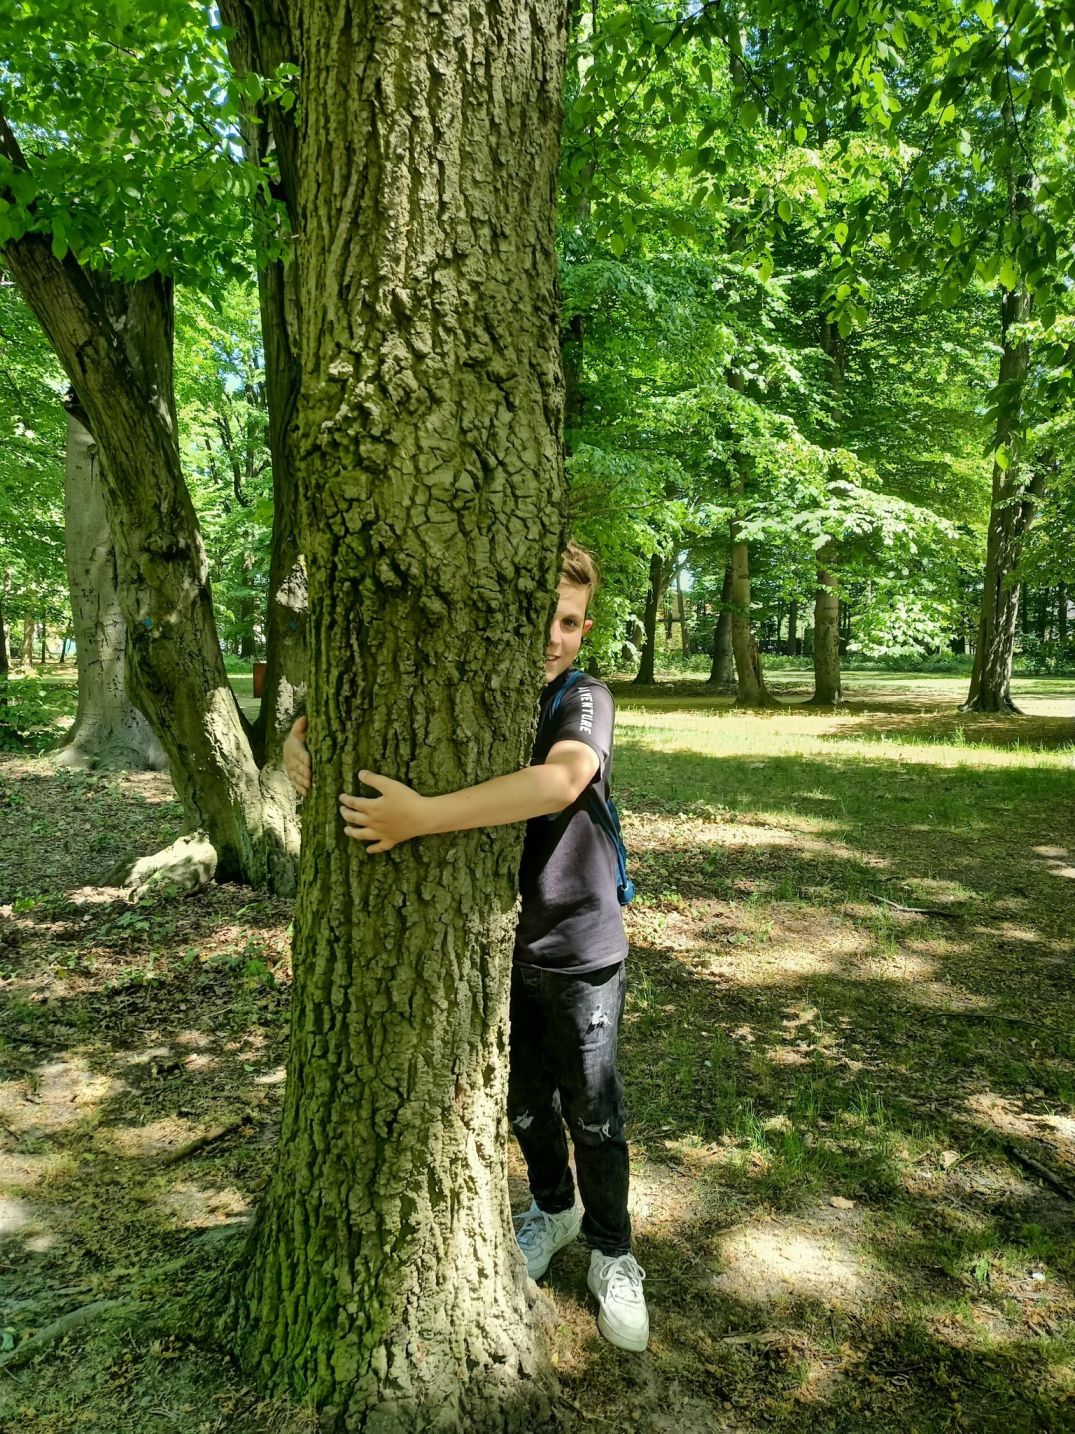 Akcja Przytul si do drzewa